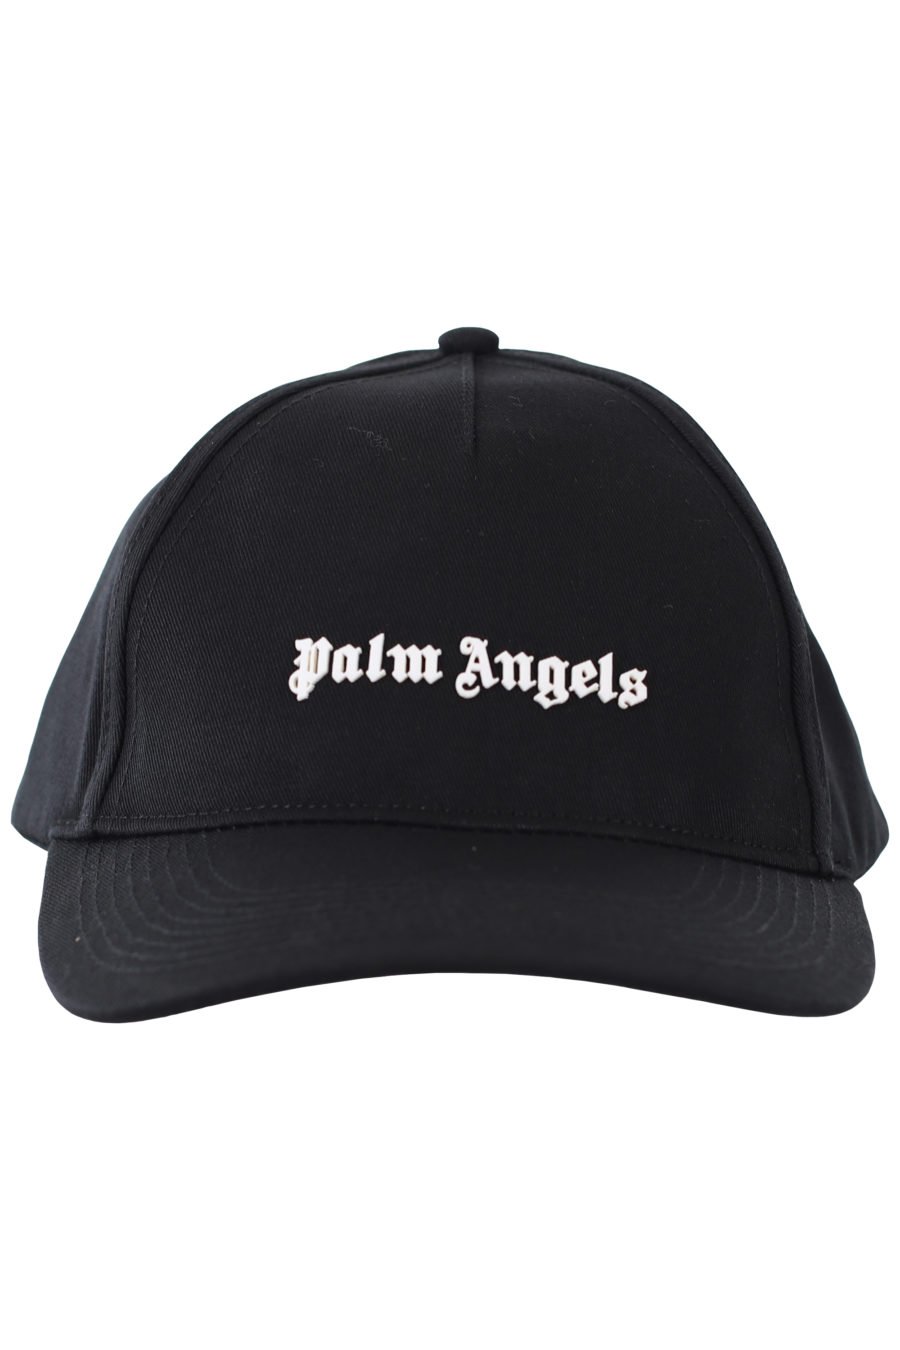 Gorra negra con logo pequeño en relieve - IMG 9388